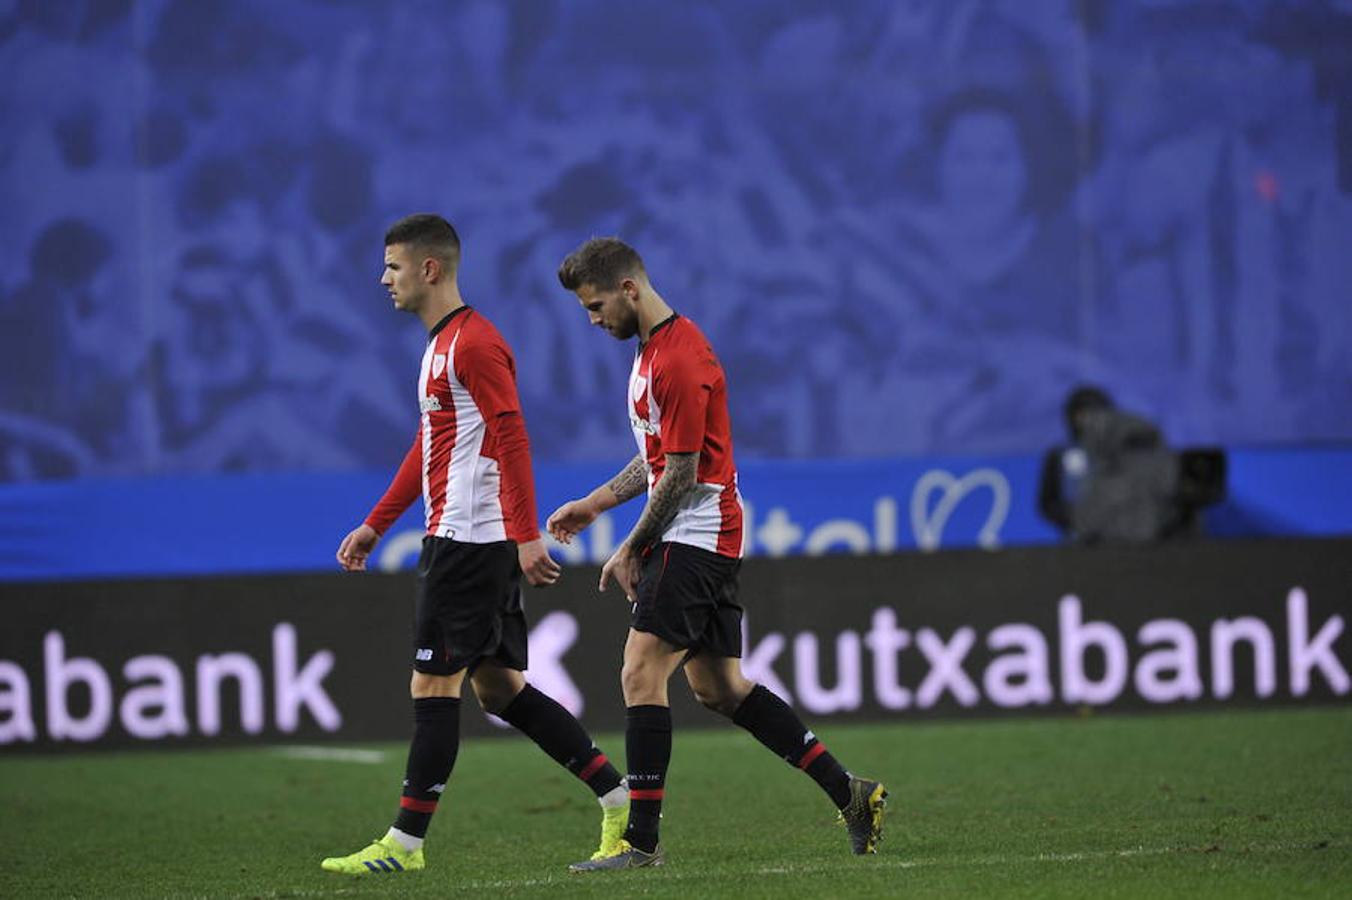 La Real Sociedad logra imponerse 2-1 al Athletic en el clásico del futbol vasco celebrado este sábado en Anoeta